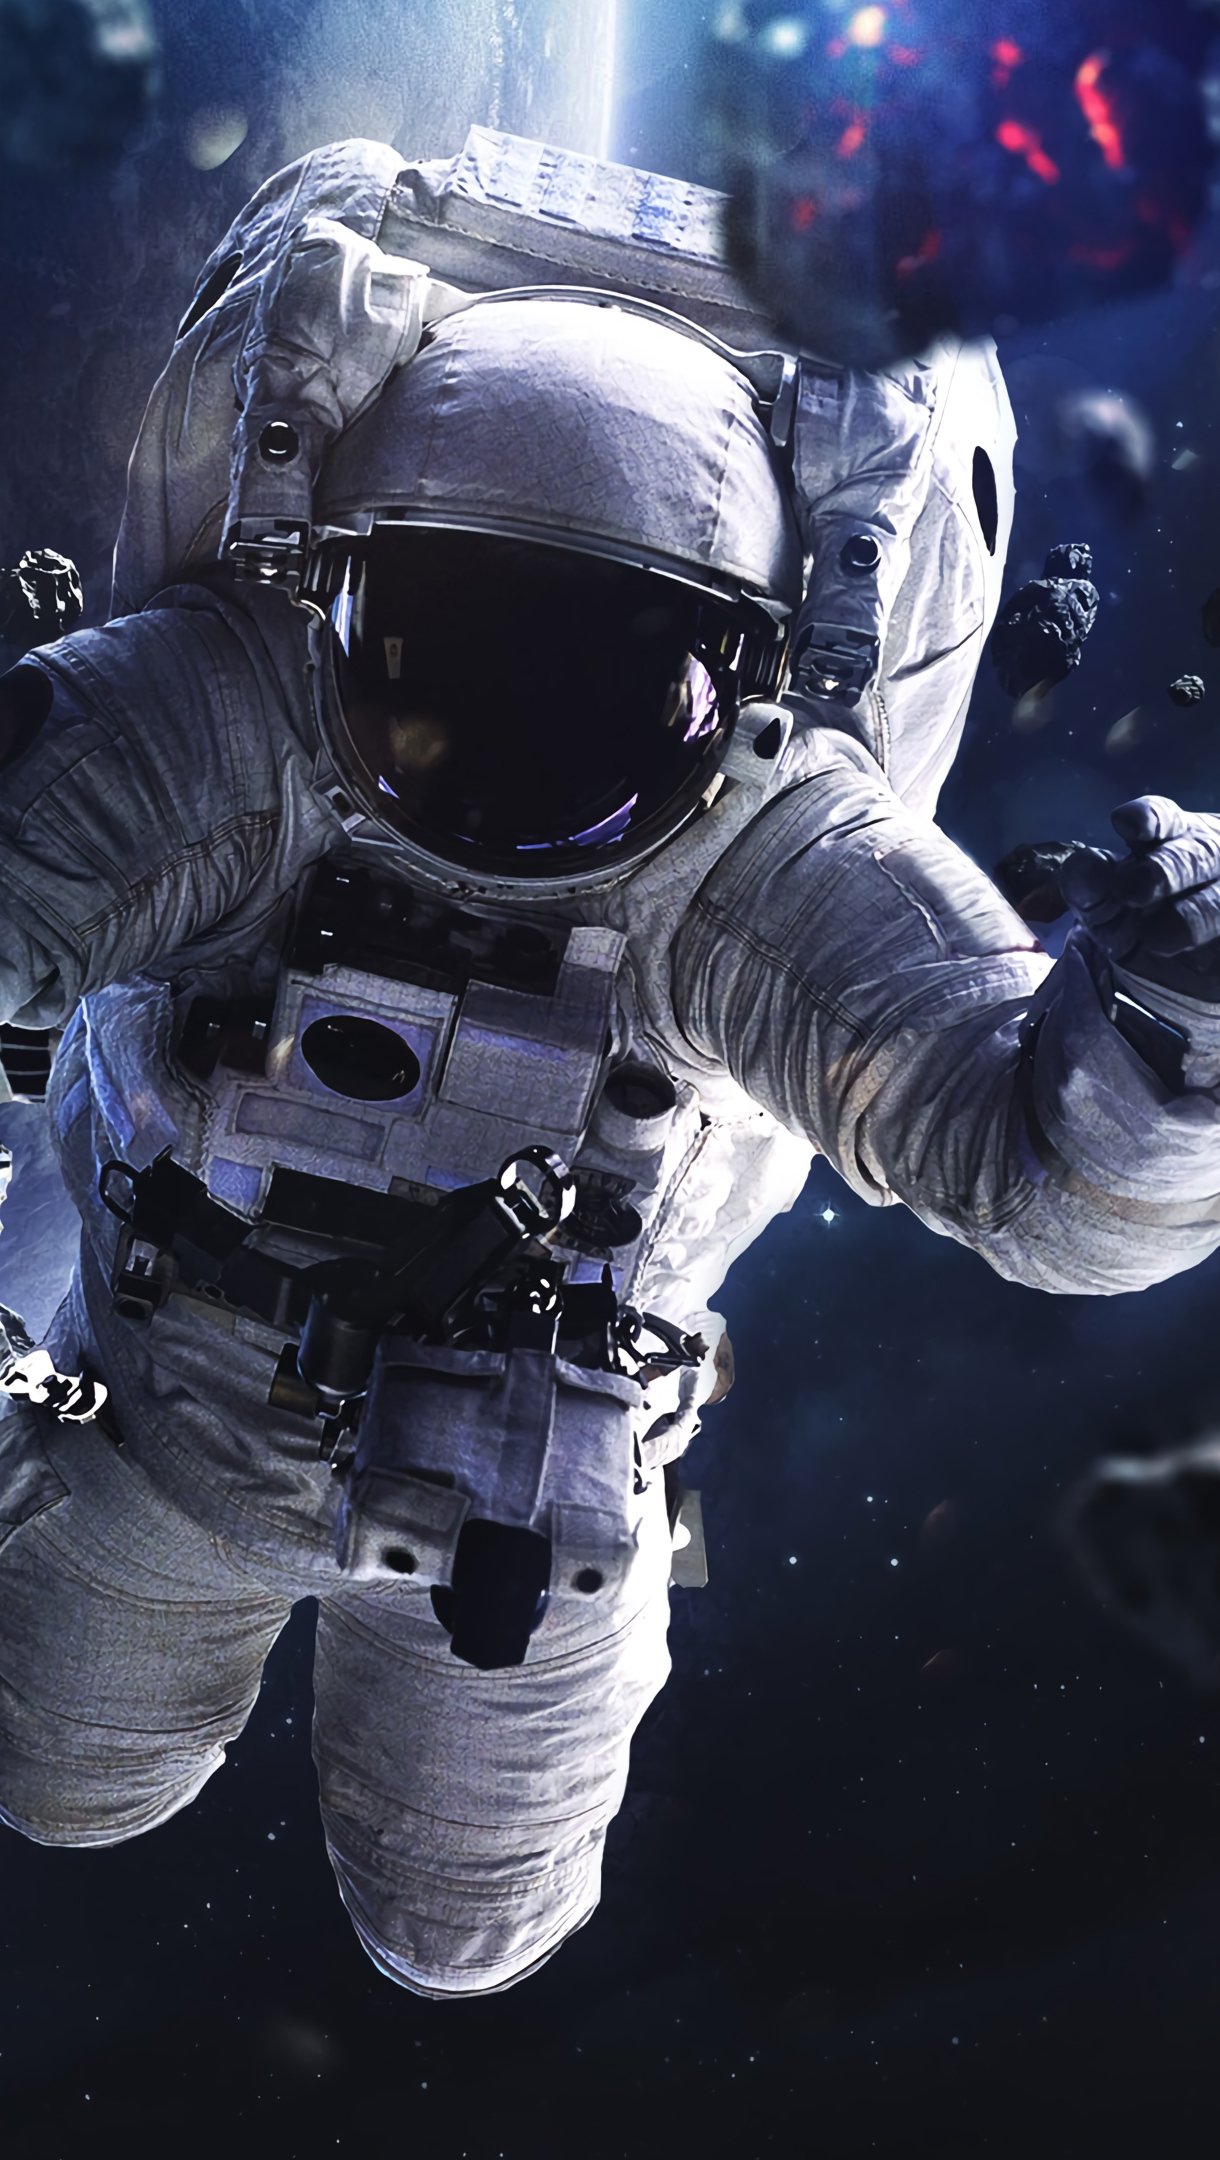 Astronauta flotando alrededor de asteroides Fondo de pantalla 4k Ultra HD  ID:5849